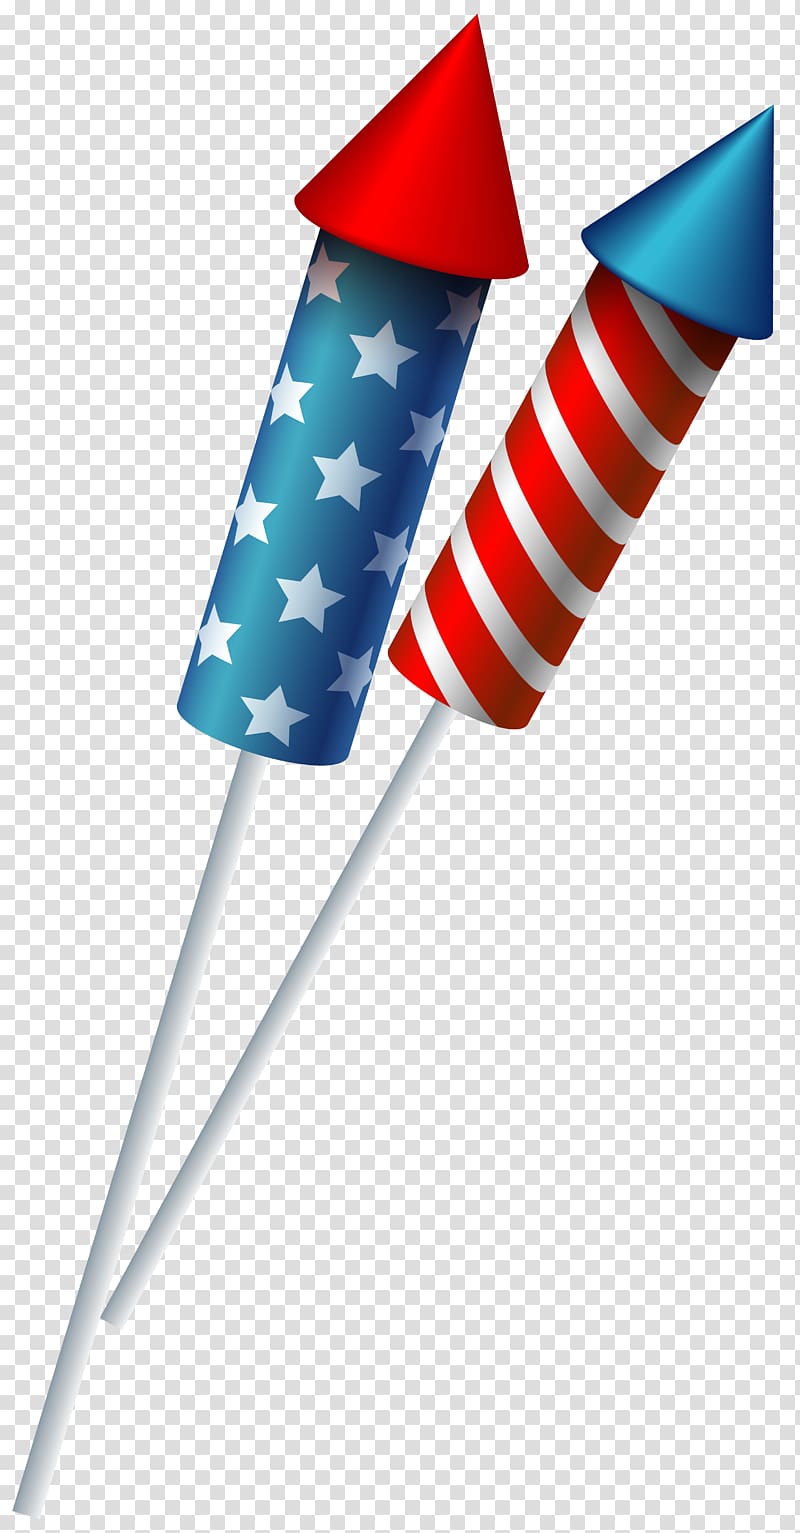 United States Independence Day Fireworks , Sparkler transparent background PNG clipart